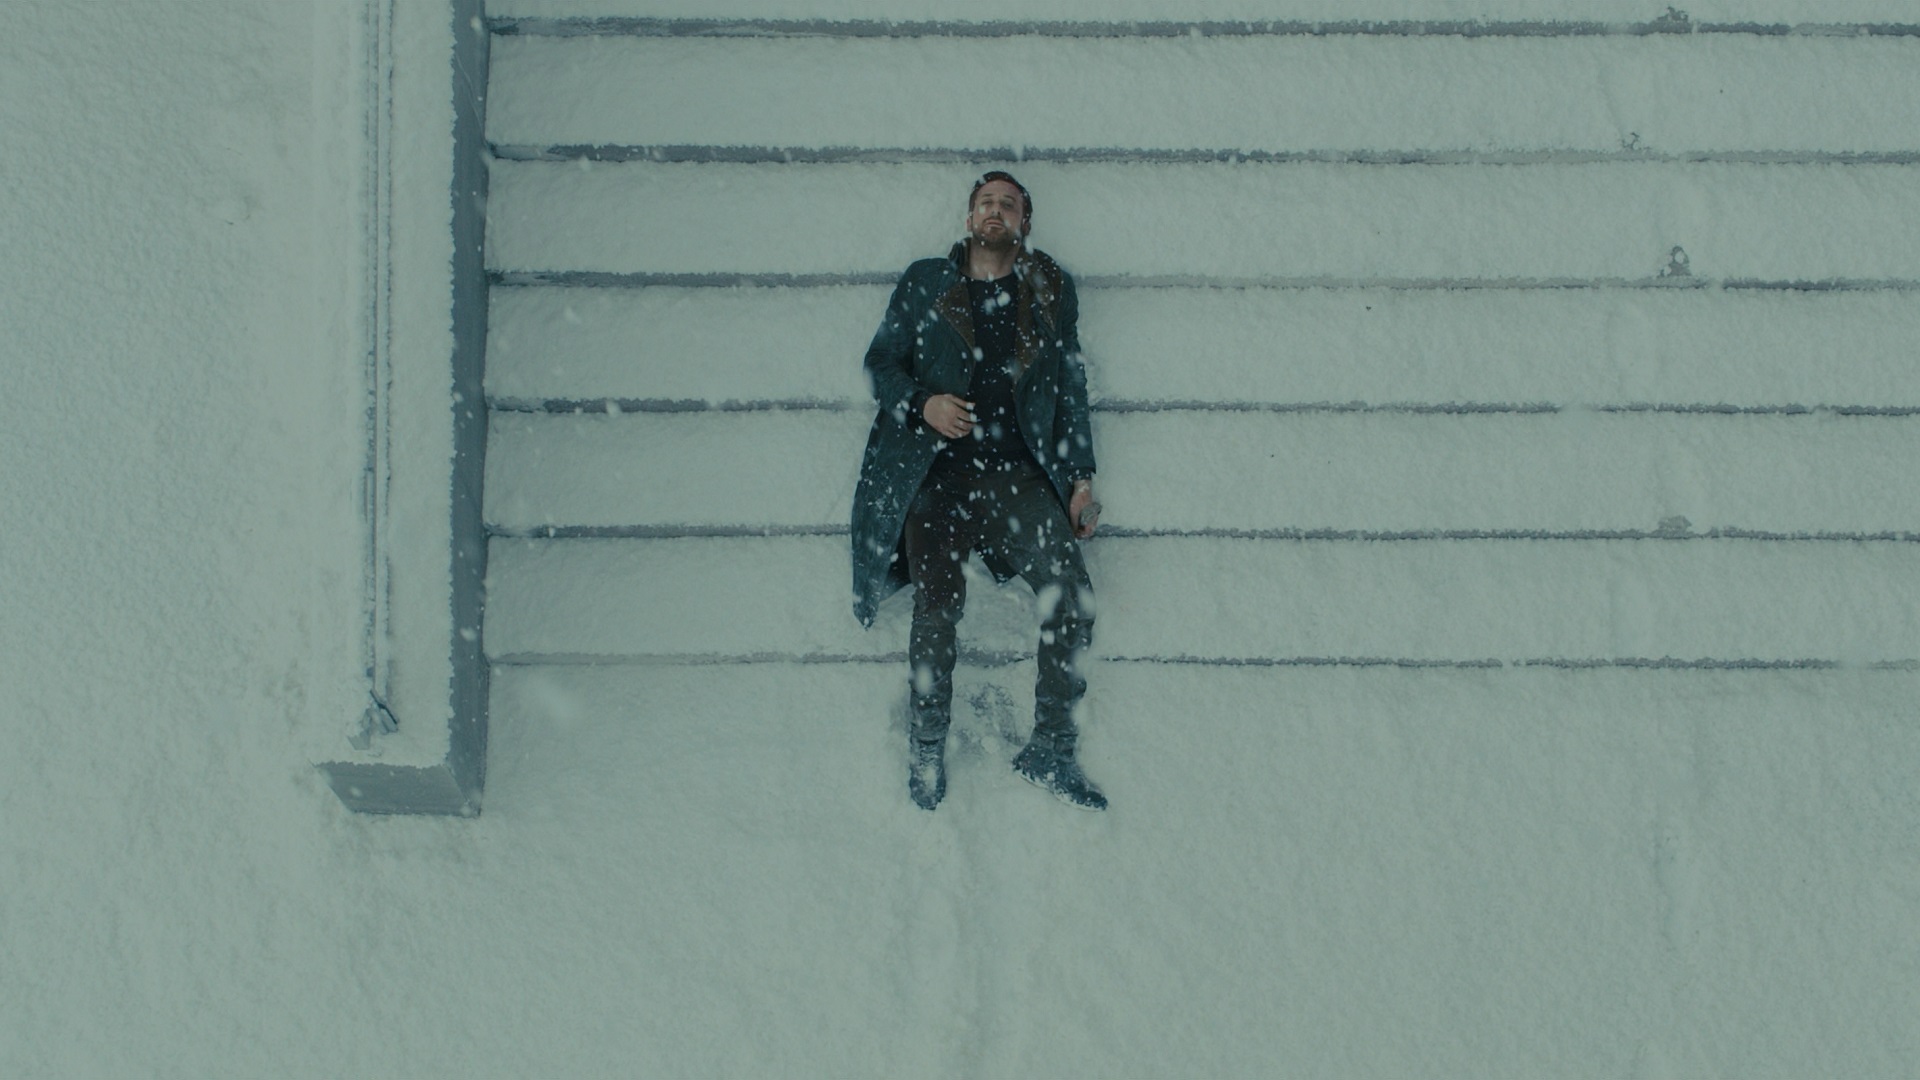 People 1920x1080 Blade Runner Blade Runner 2049 snow winter stairs movies men actor Ryan Gosling lying down